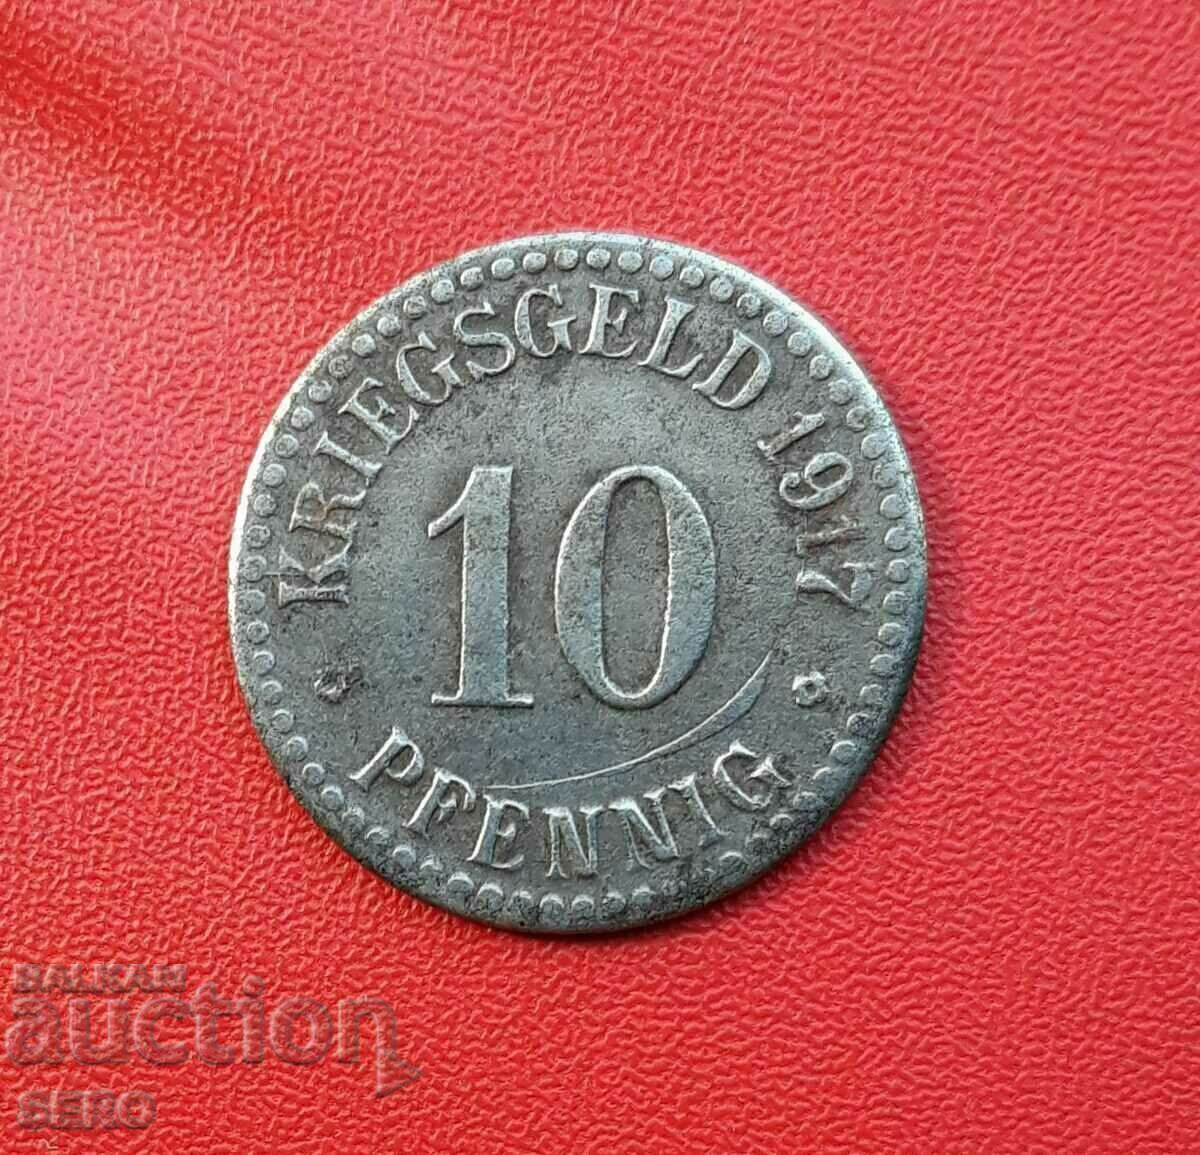 Γερμανία-Έσση-Κάσσελ-10 pfennig 1917-ραγισμένο ζάρι